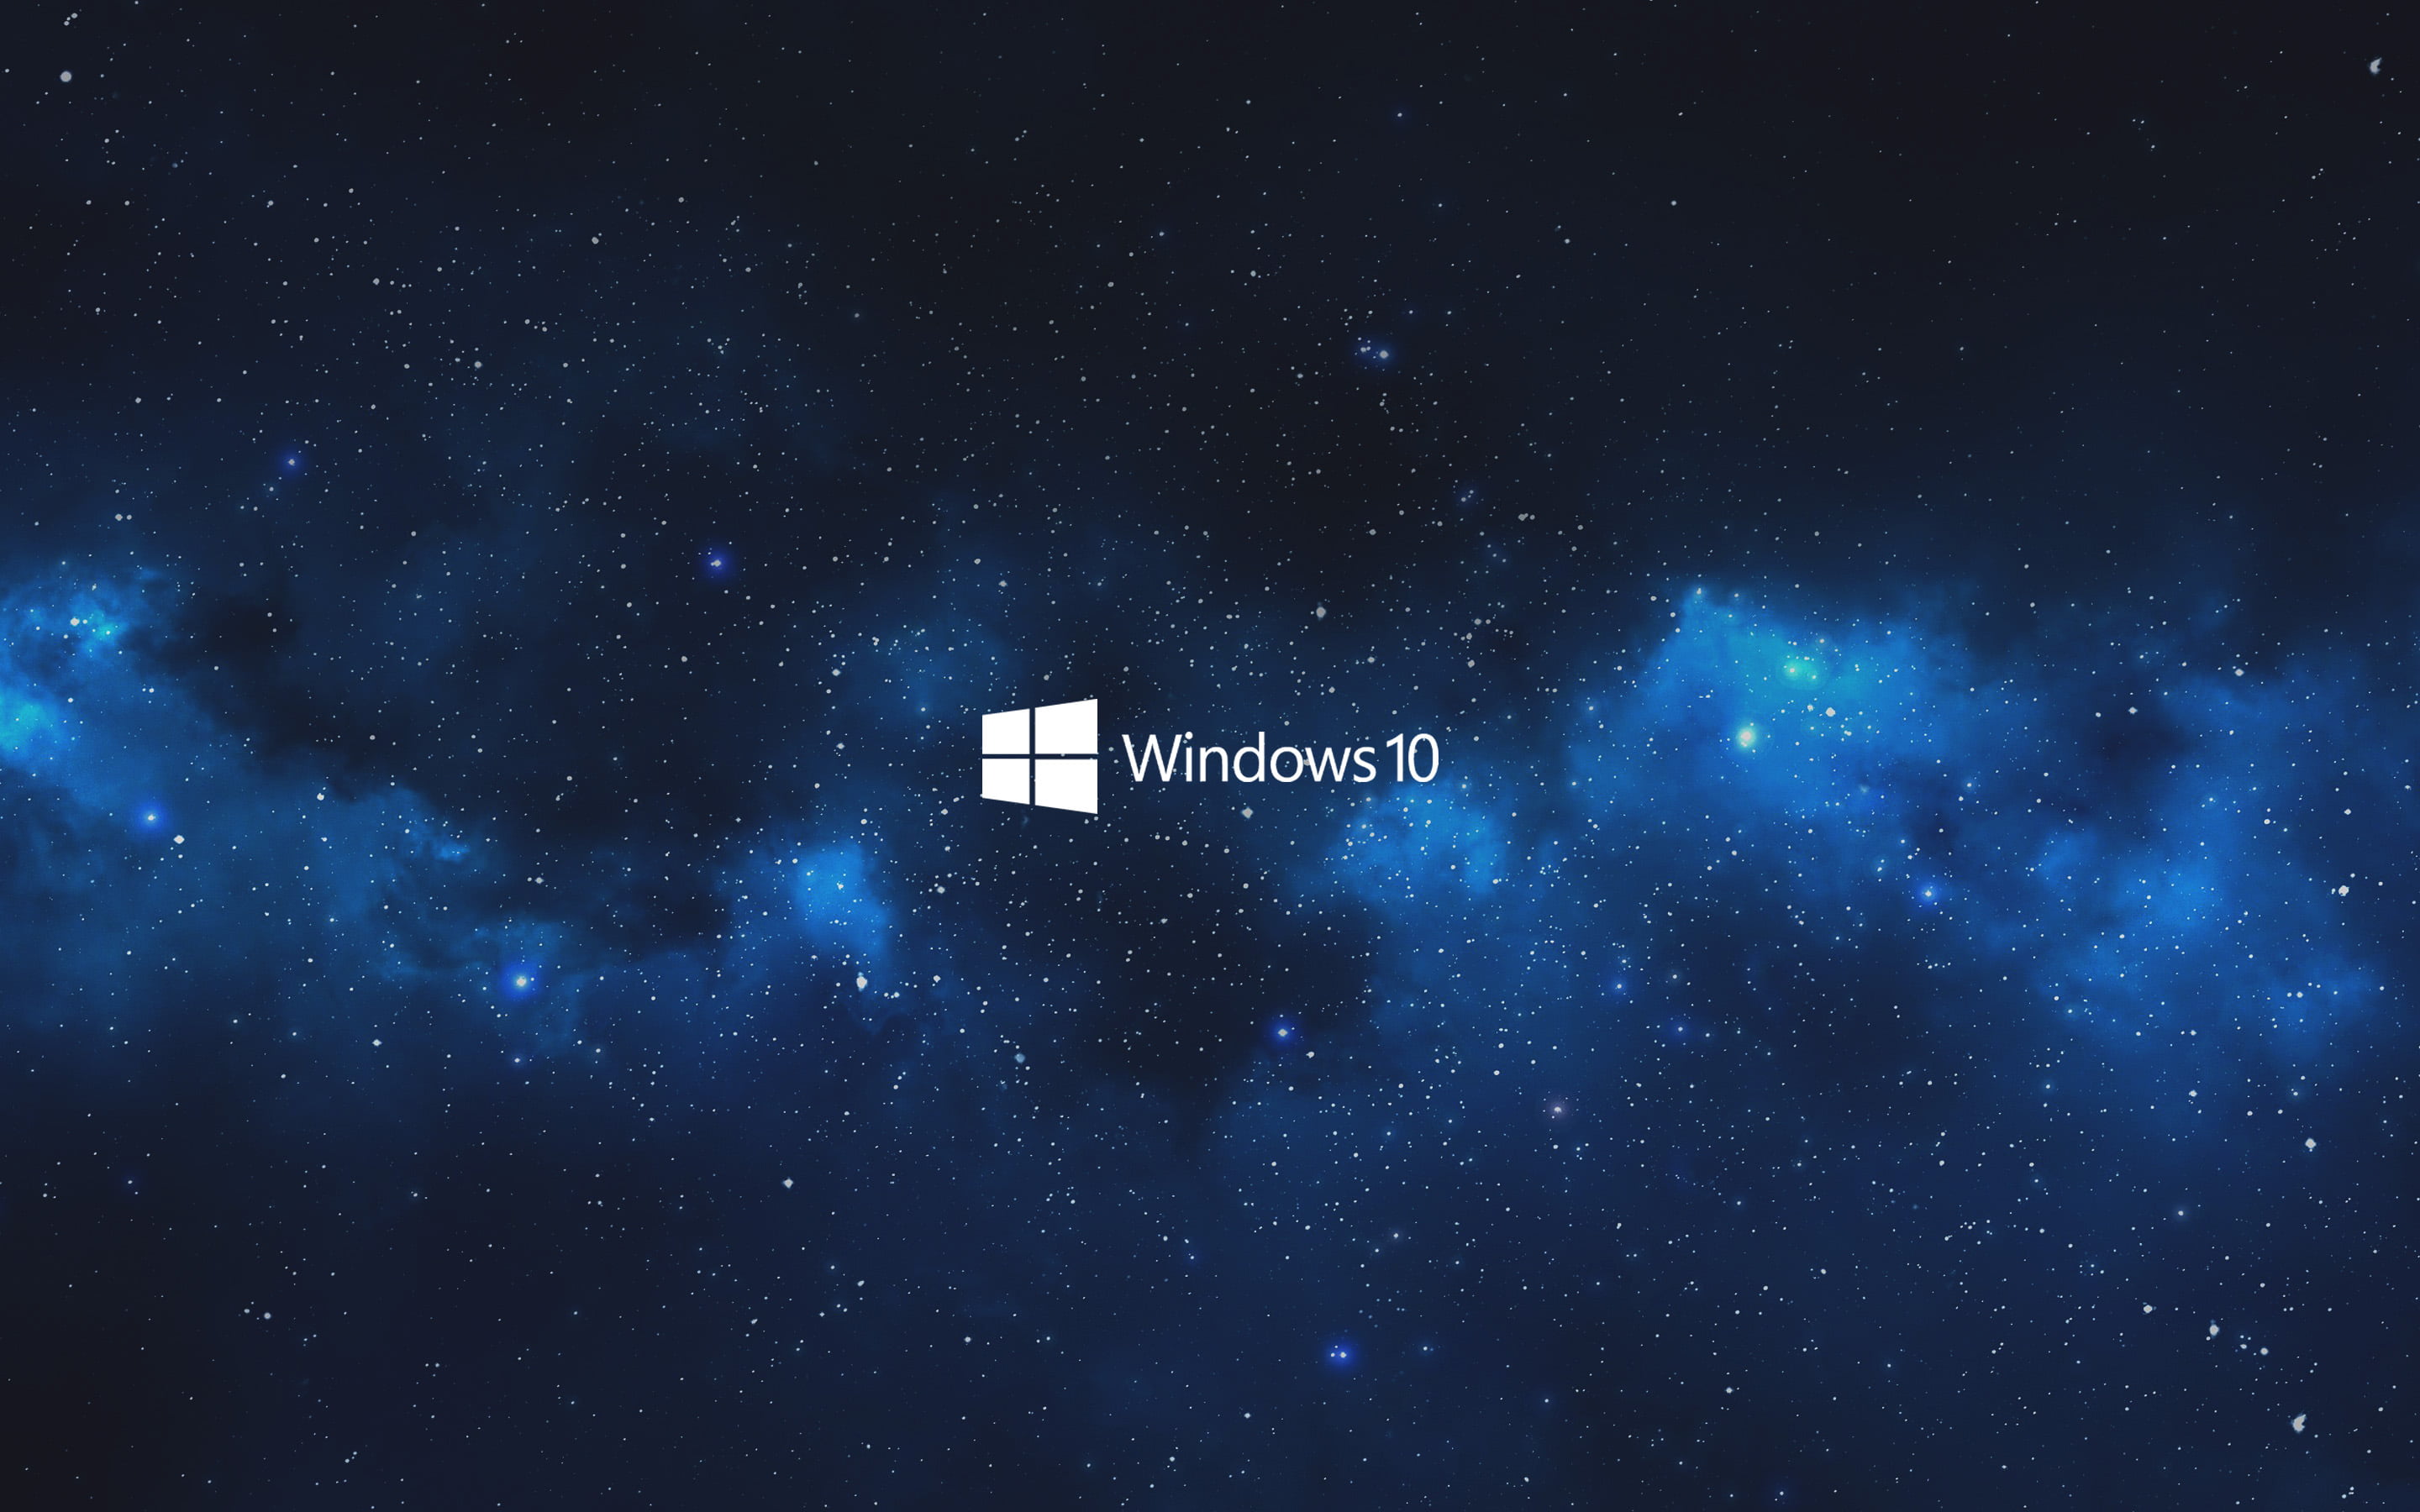 Download Gambar Wallpaper Hd Black Windows 10 Terbaru 2020 Miuiku Images